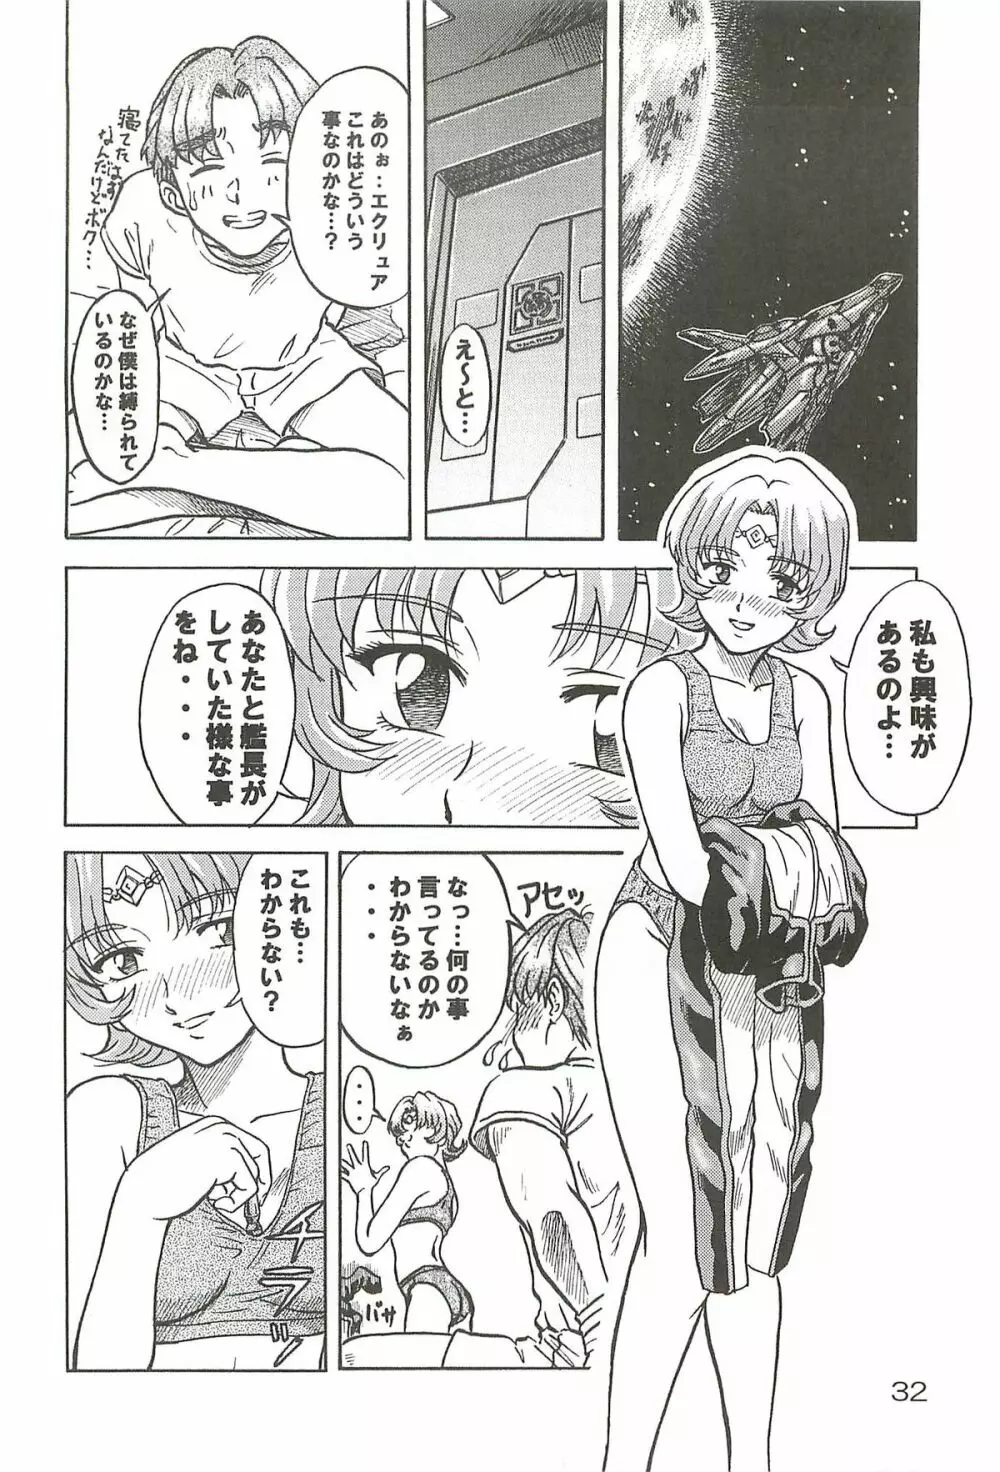 追放覚悟 Special edition Phase1 - page31